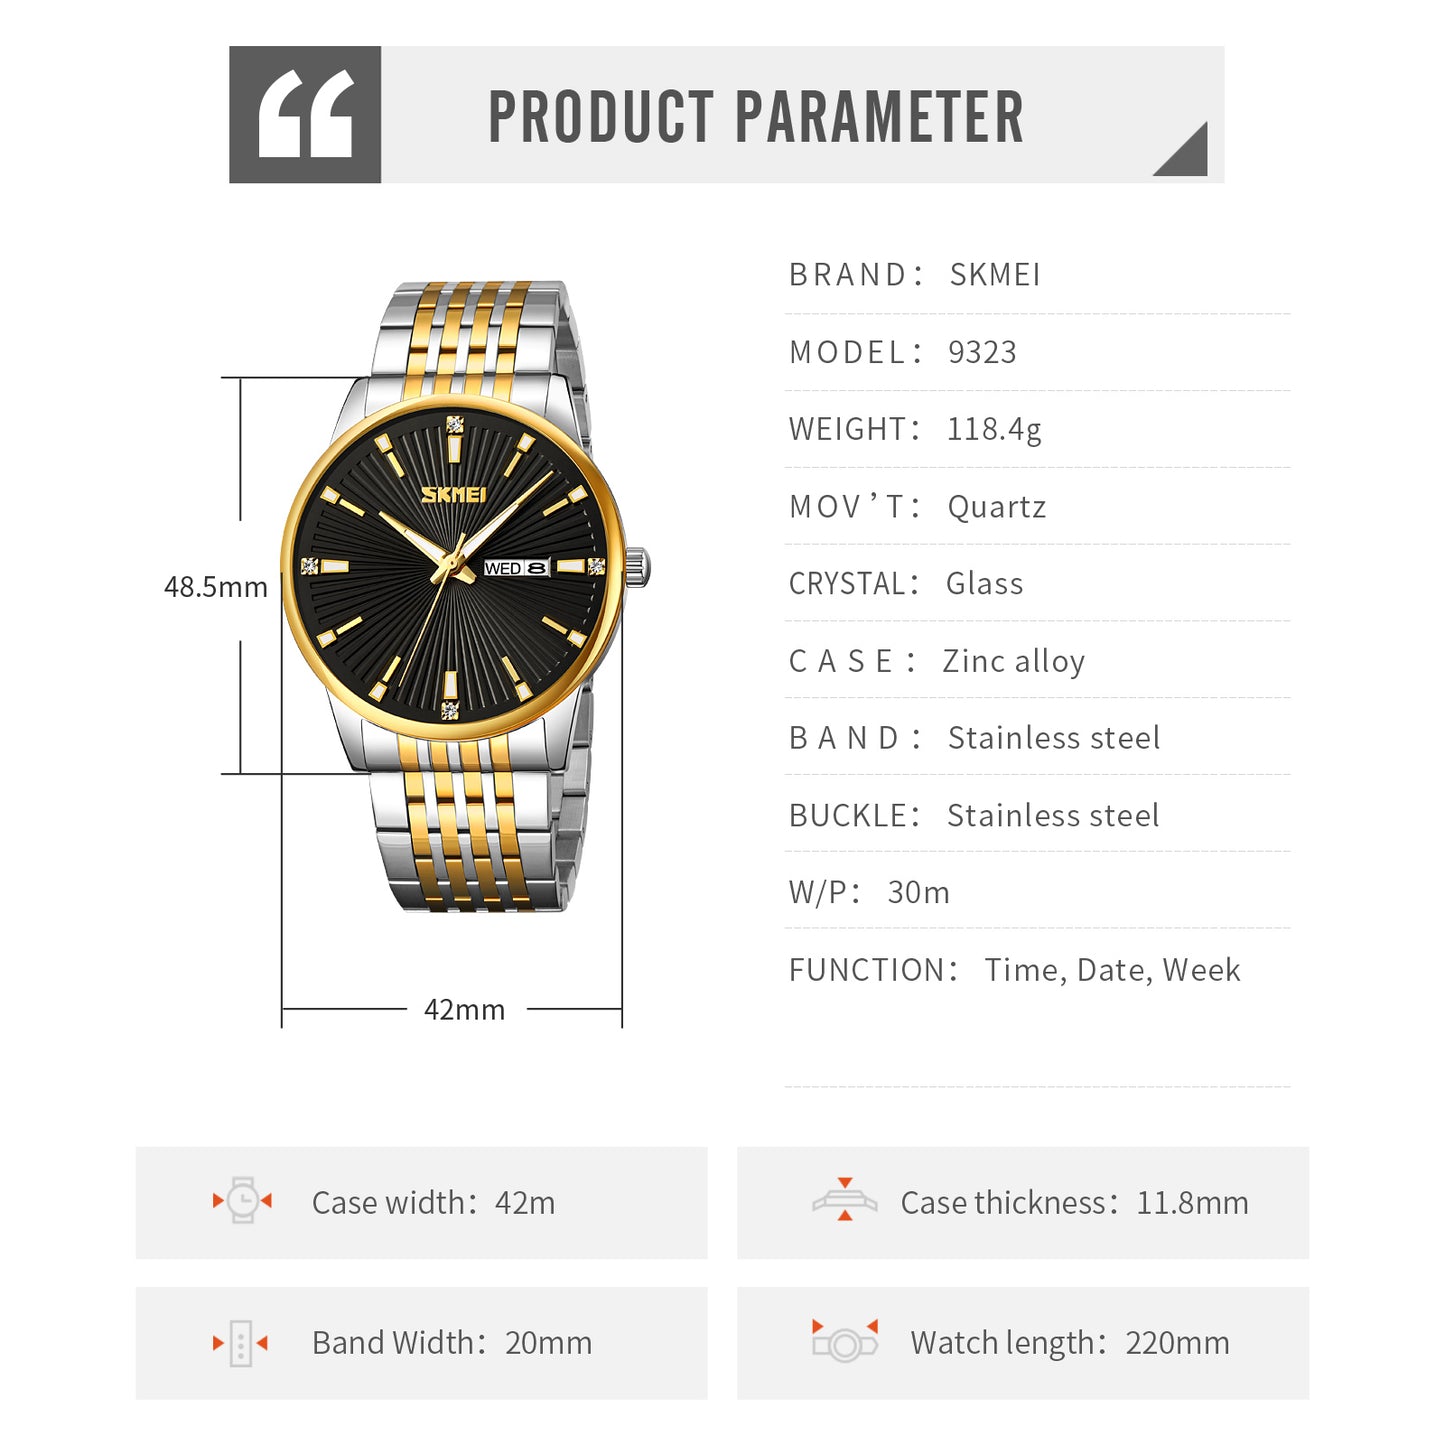 SKMEI 9323 Stylish Premium Quality Quartz Watch | SKMEI 80